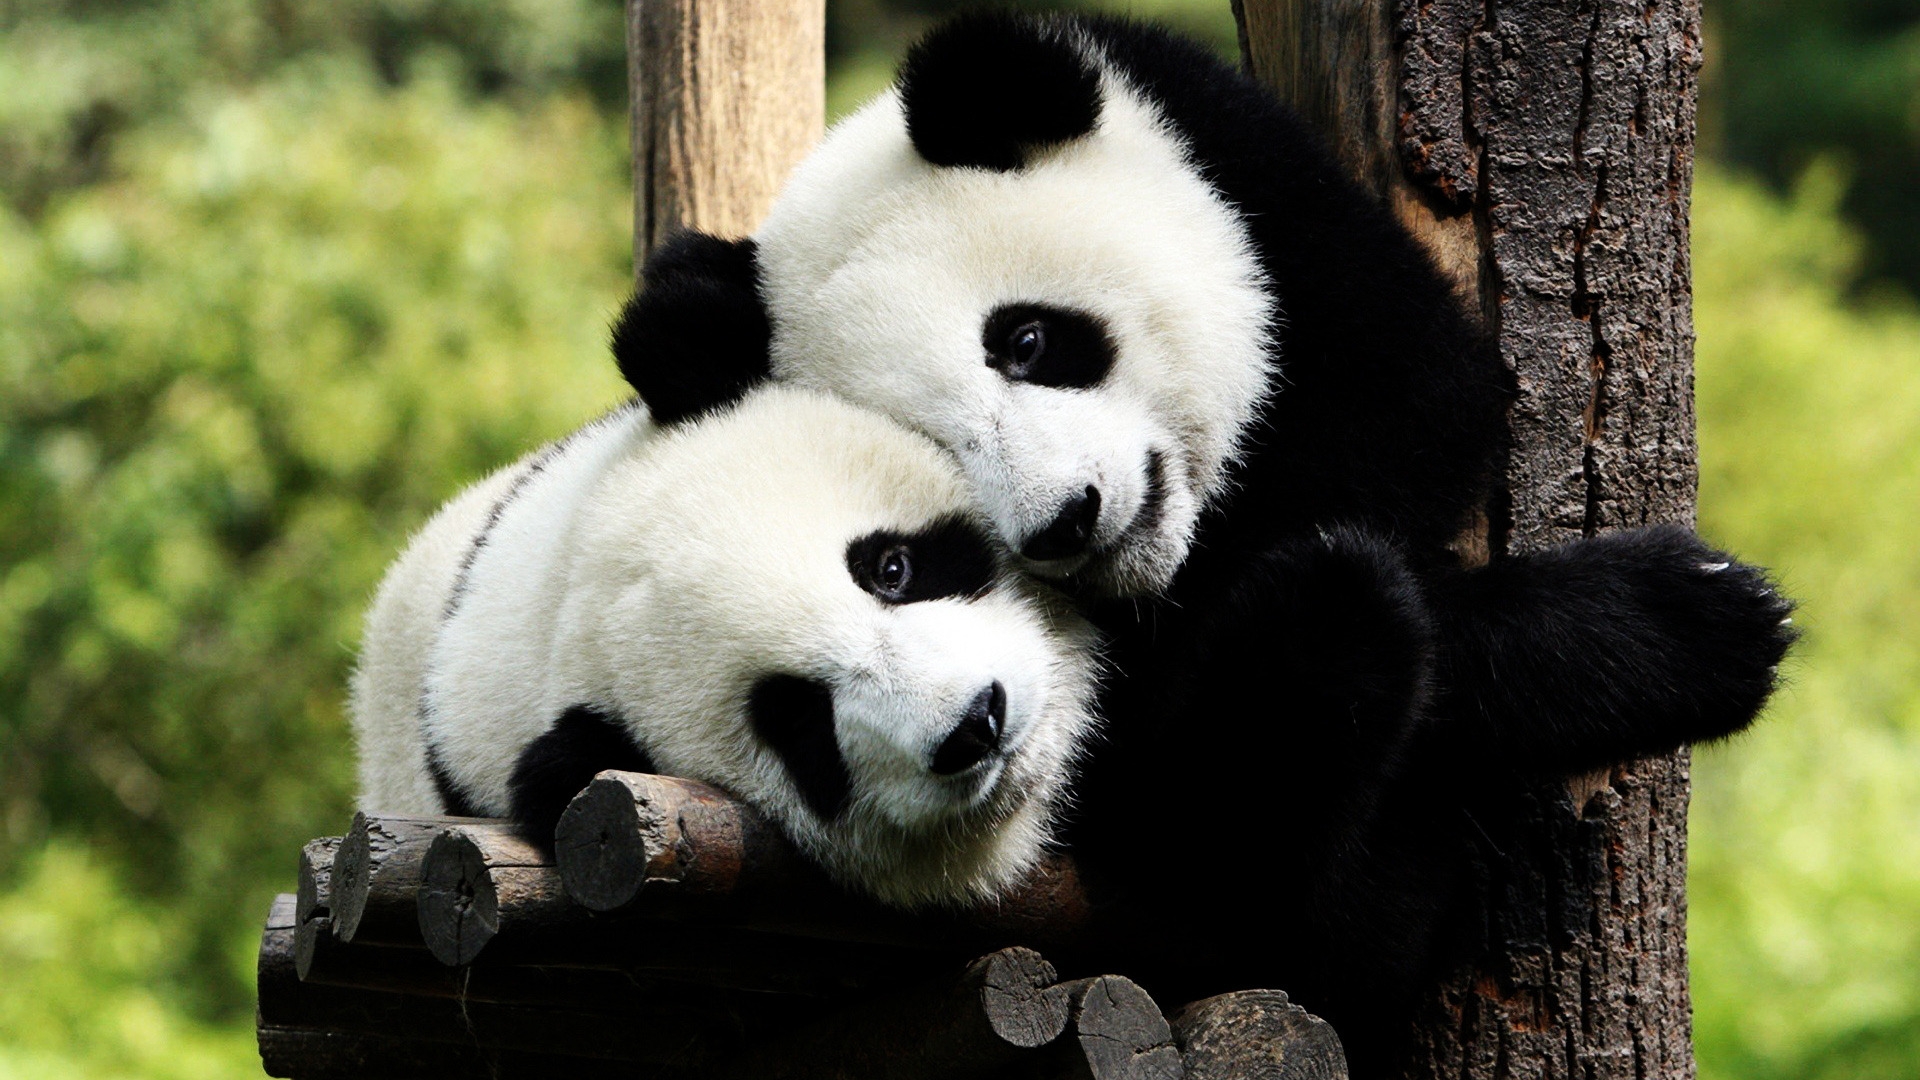 Panda Bears in Love for 1920 x 1080 HDTV 1080p resolution